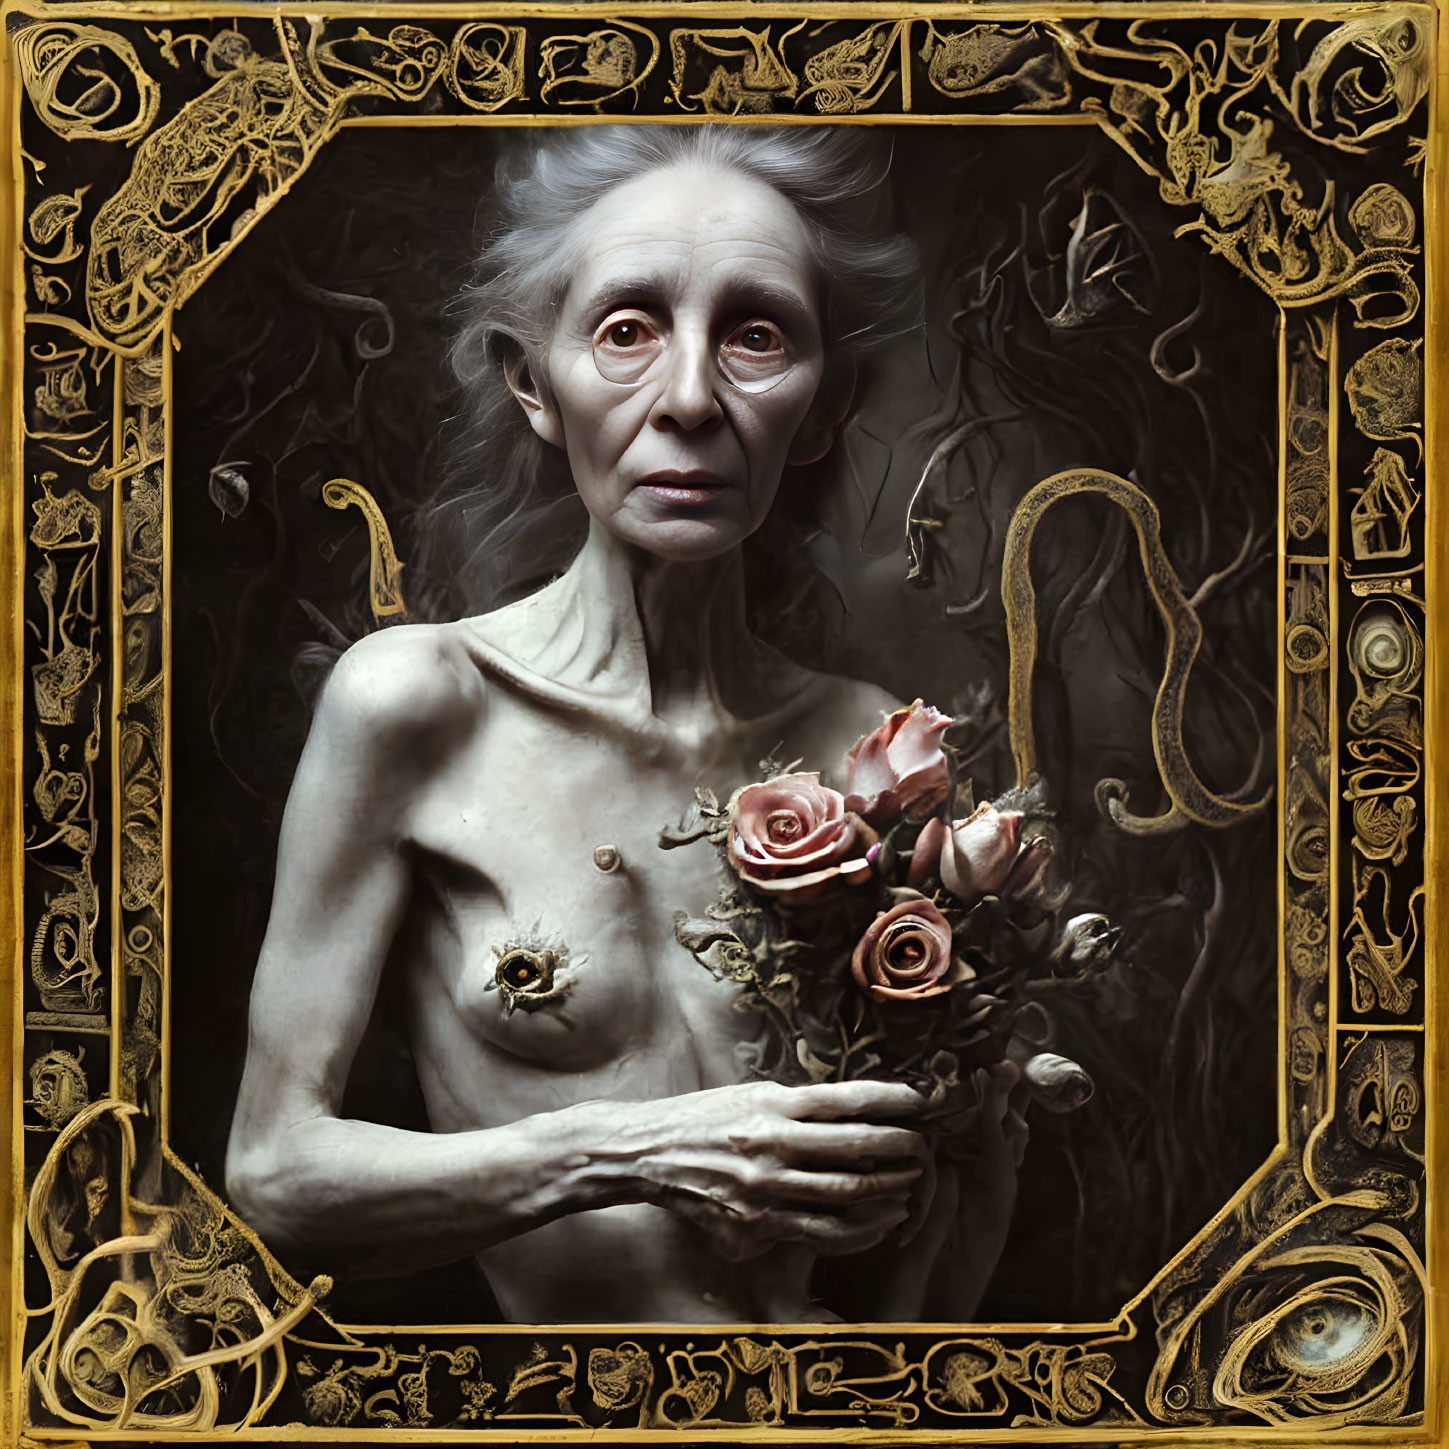 Elderly woman holding roses in ornate baroque frame